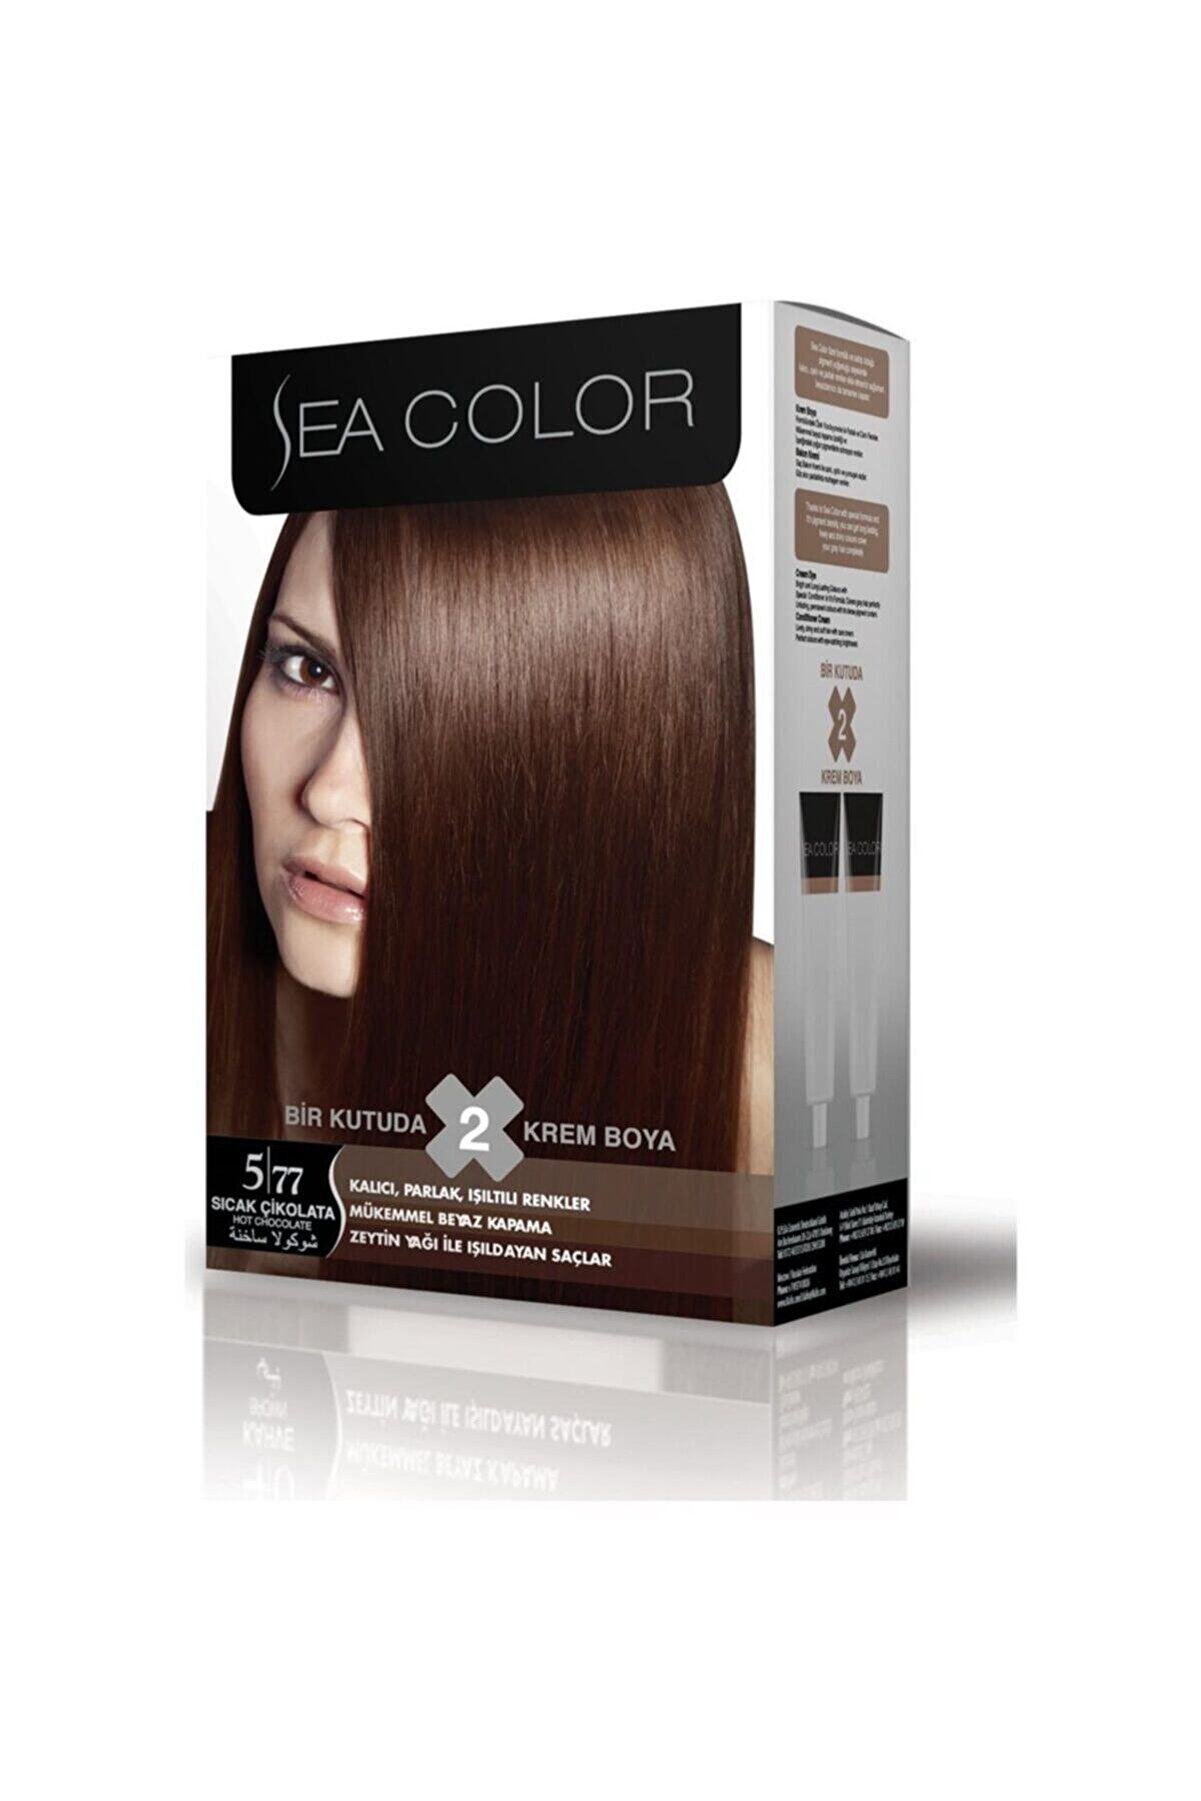 Sea Color 2'li Saç Boyası 5,77 Sıcak Cikolata